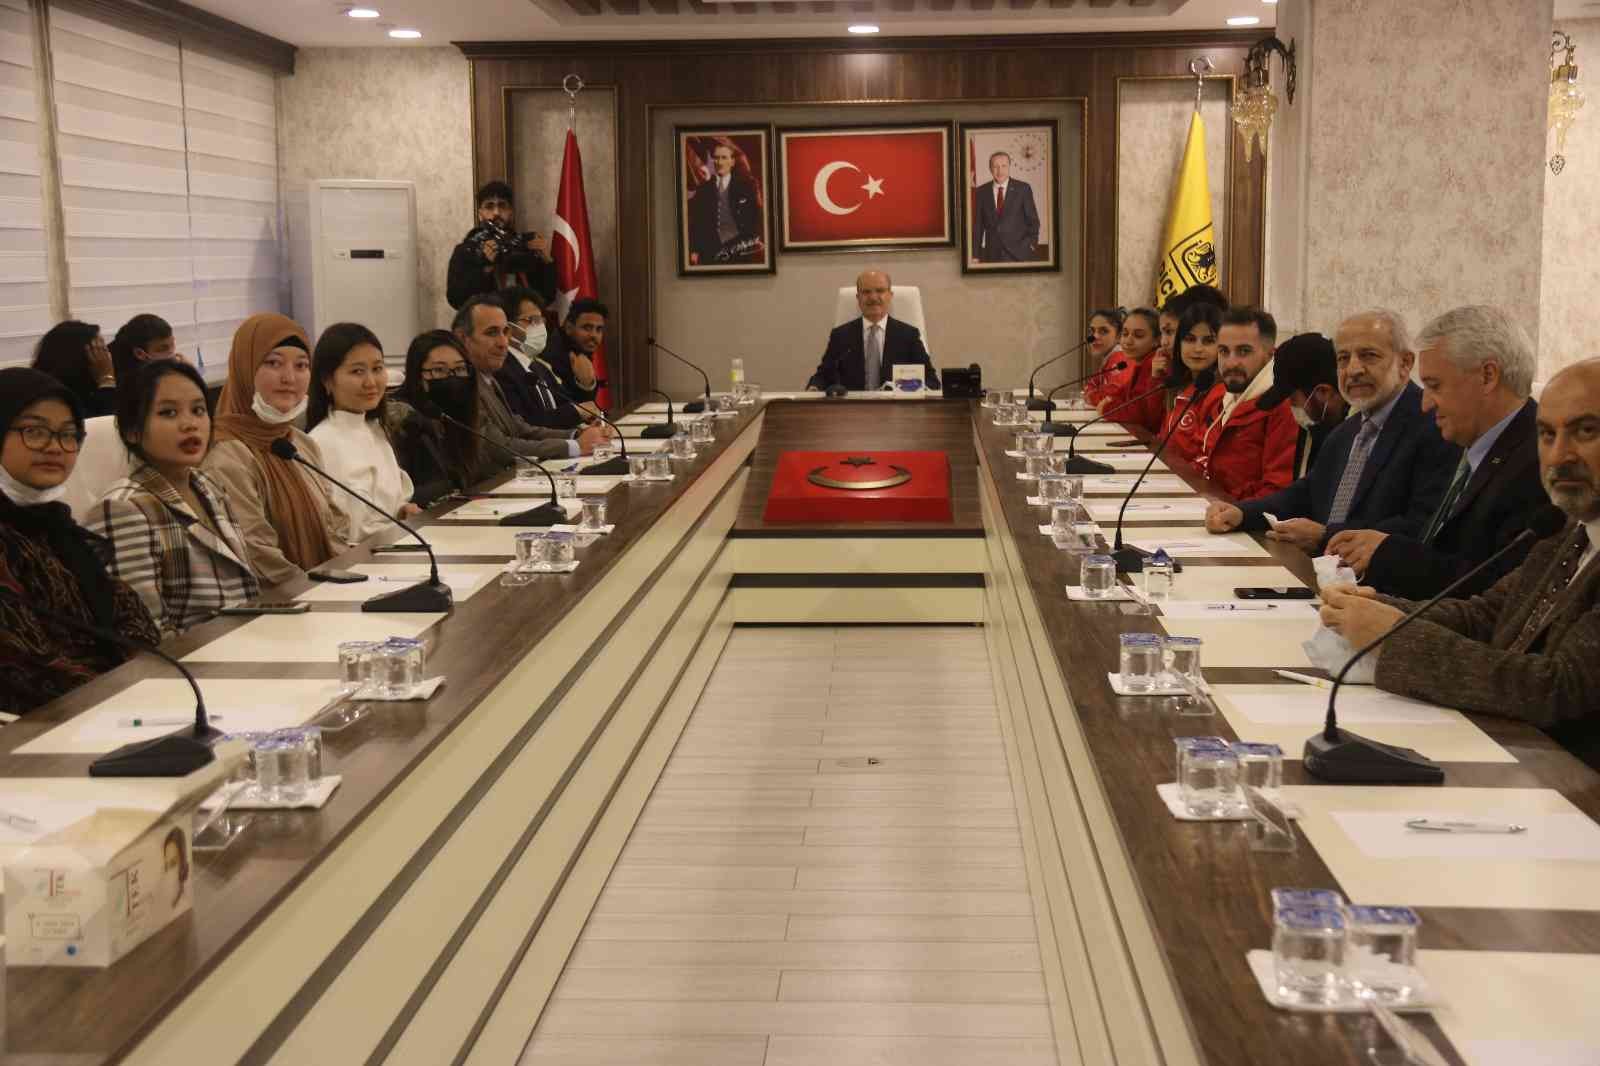 YÖK Başkanı Özvar: “Türkiye, çeyrek milyon uluslararası öğrencimize ev sahipliği yapıyor” #diyarbakir